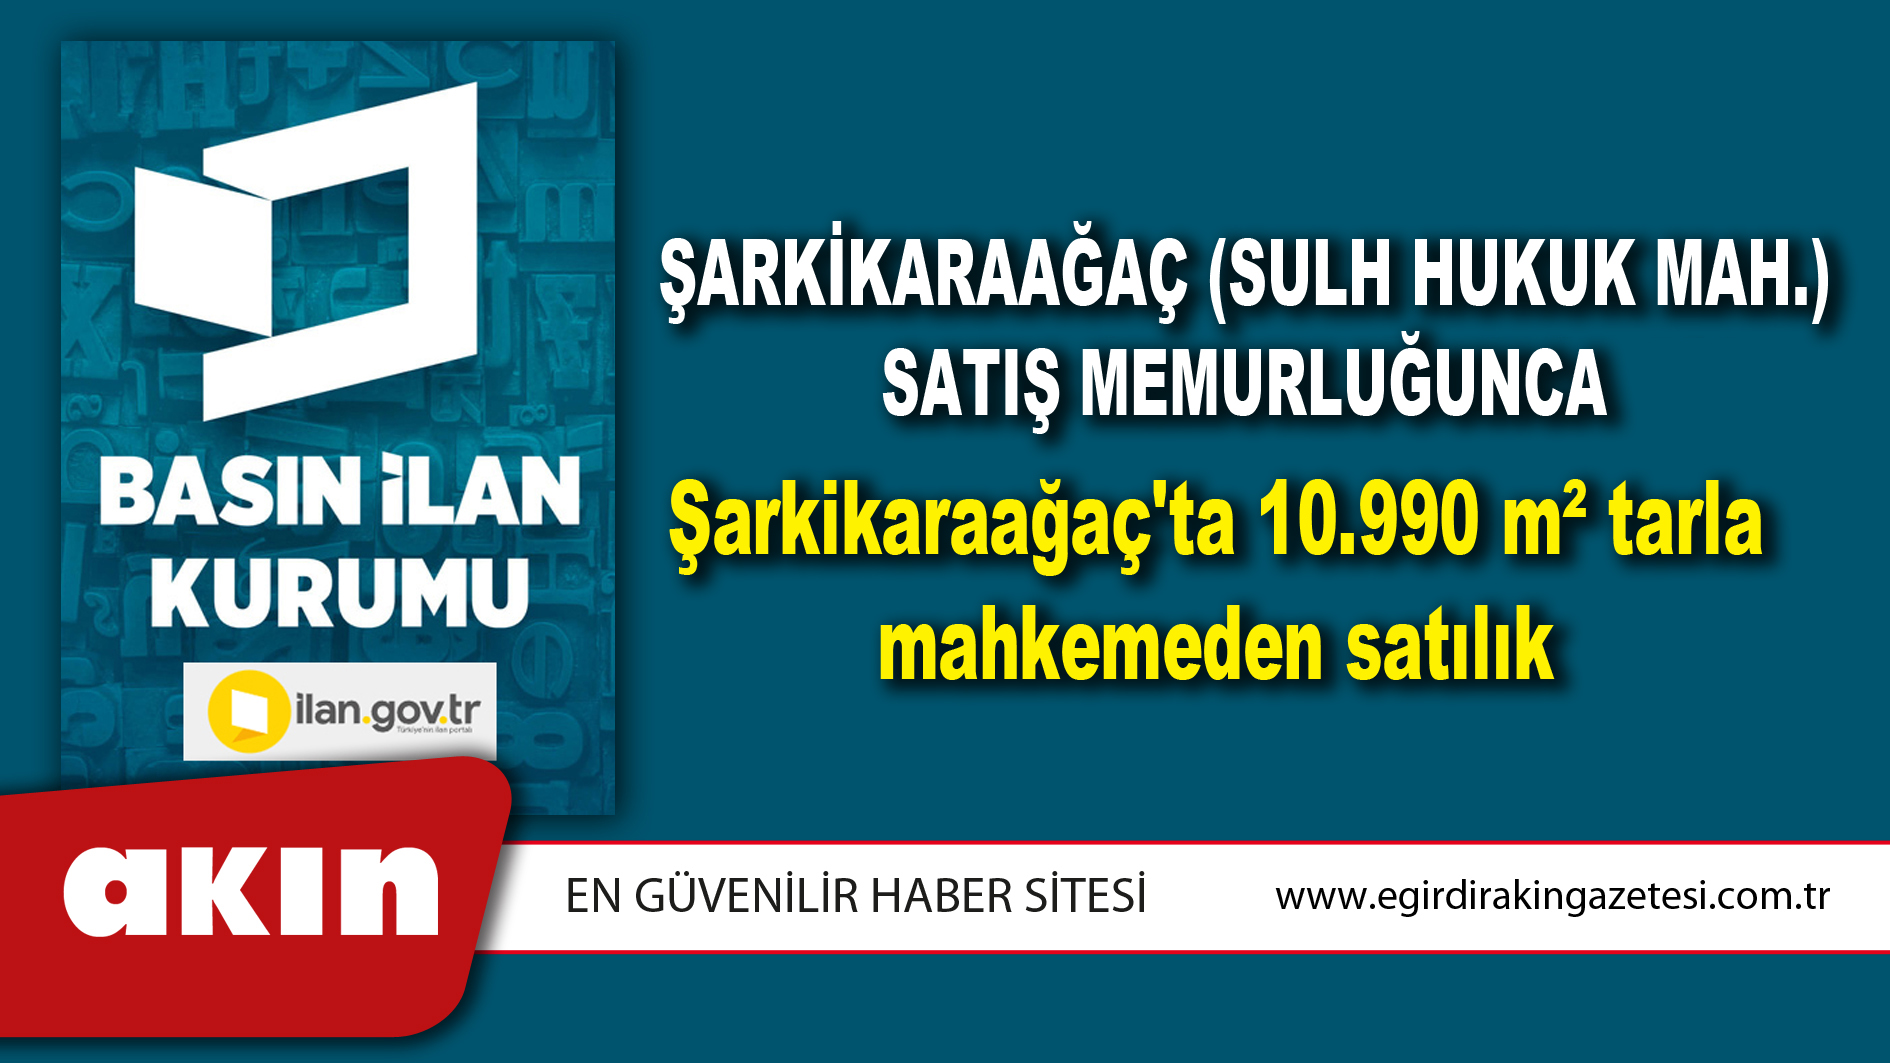 Şarkikaraağaç (Sulh Hukuk Mah.) Satış Memurluğunca Şarkikaraağaç'ta 10.990 m² tarla mahkemeden satılık